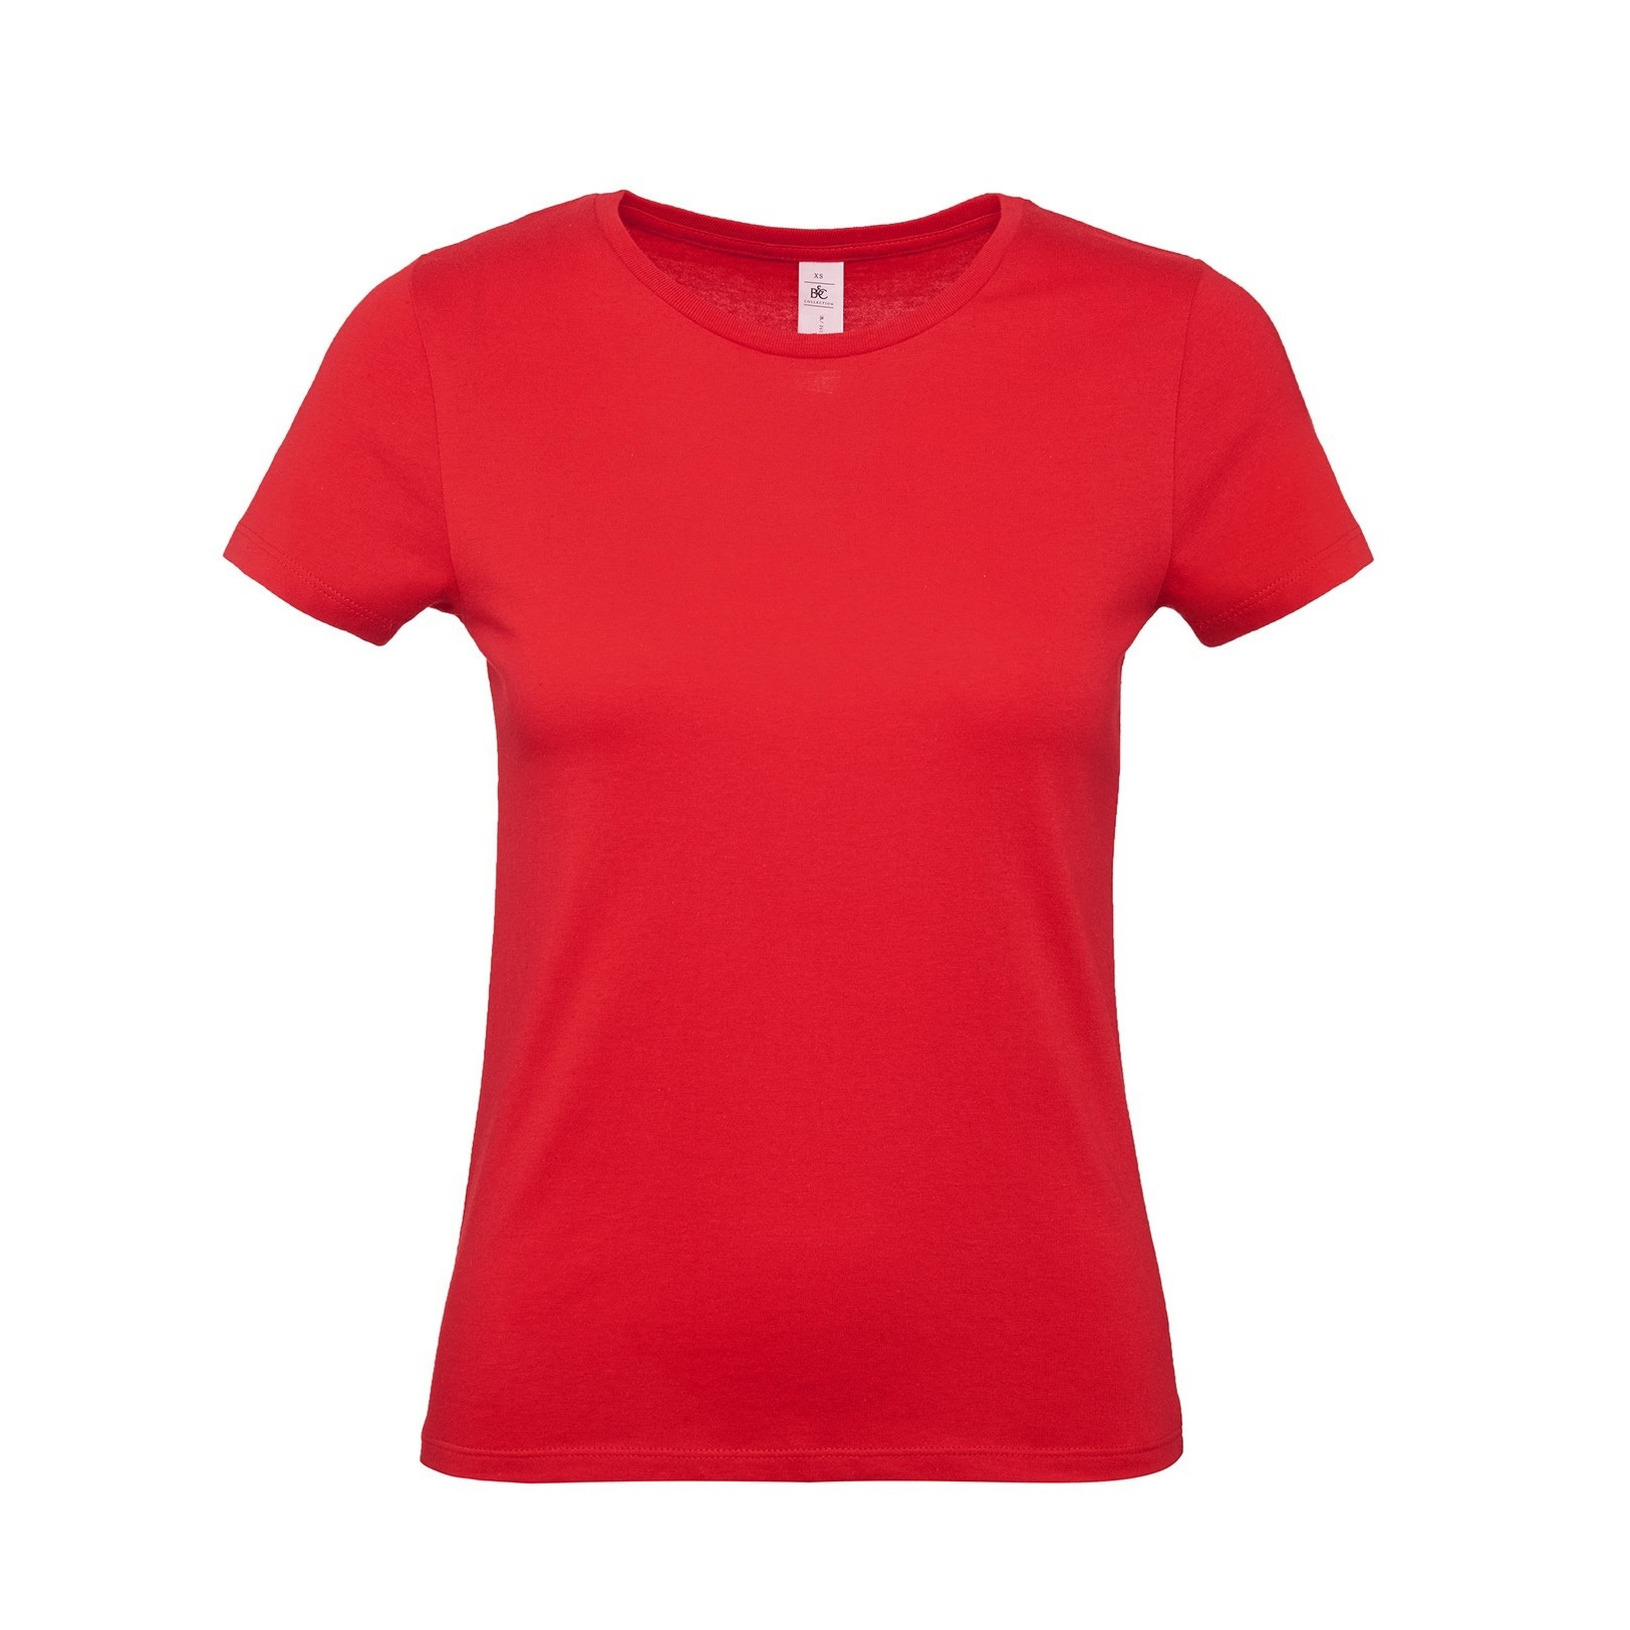 Set van 4x stuks rood basic t-shirts met ronde hals voor dames van katoen, maat: XS (34)